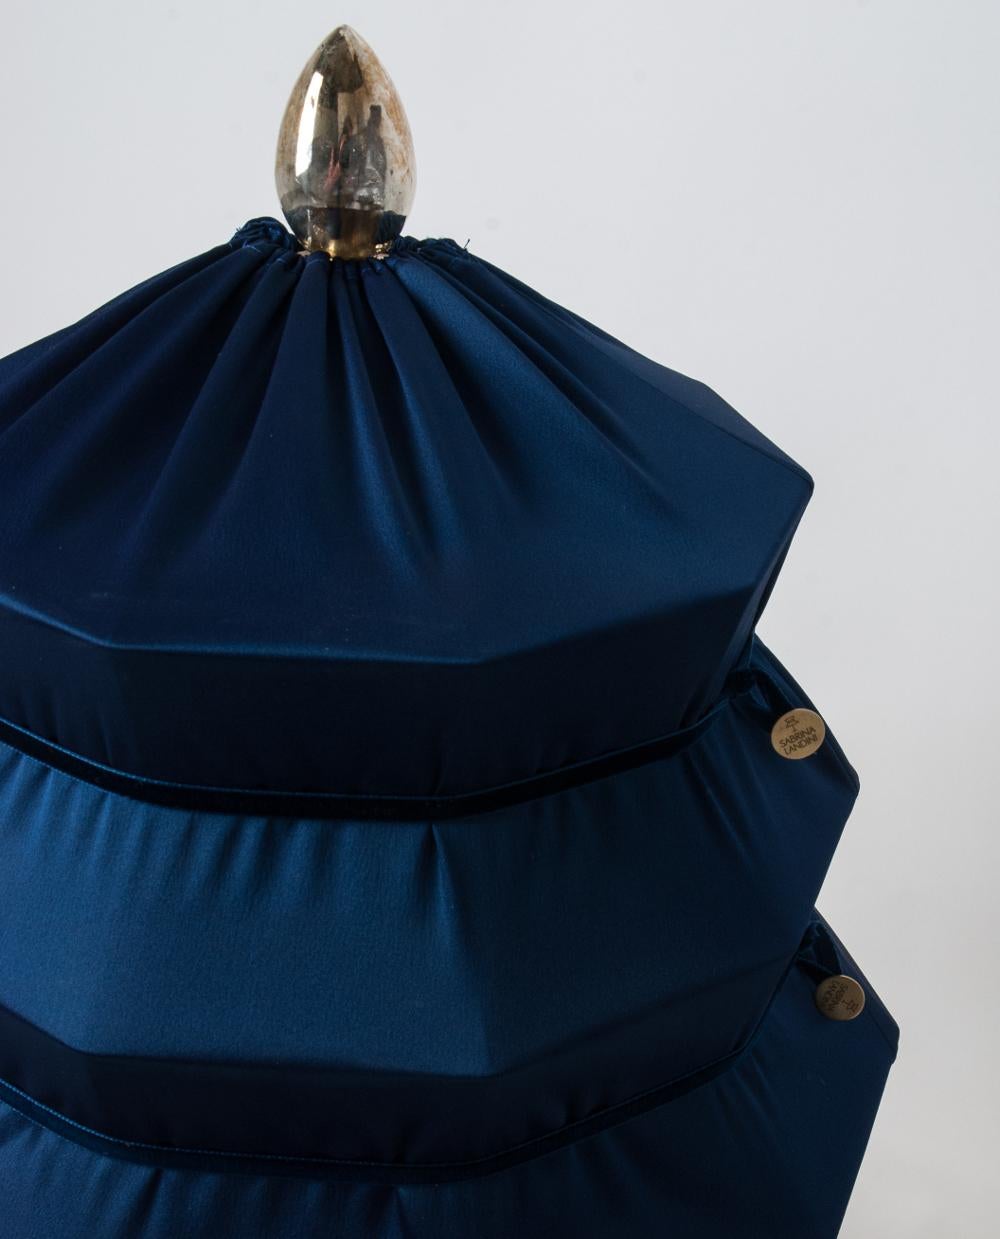 Modern “Pagoda” Contemporary Table Lamp, Blue China Satin Silk Satin Brass